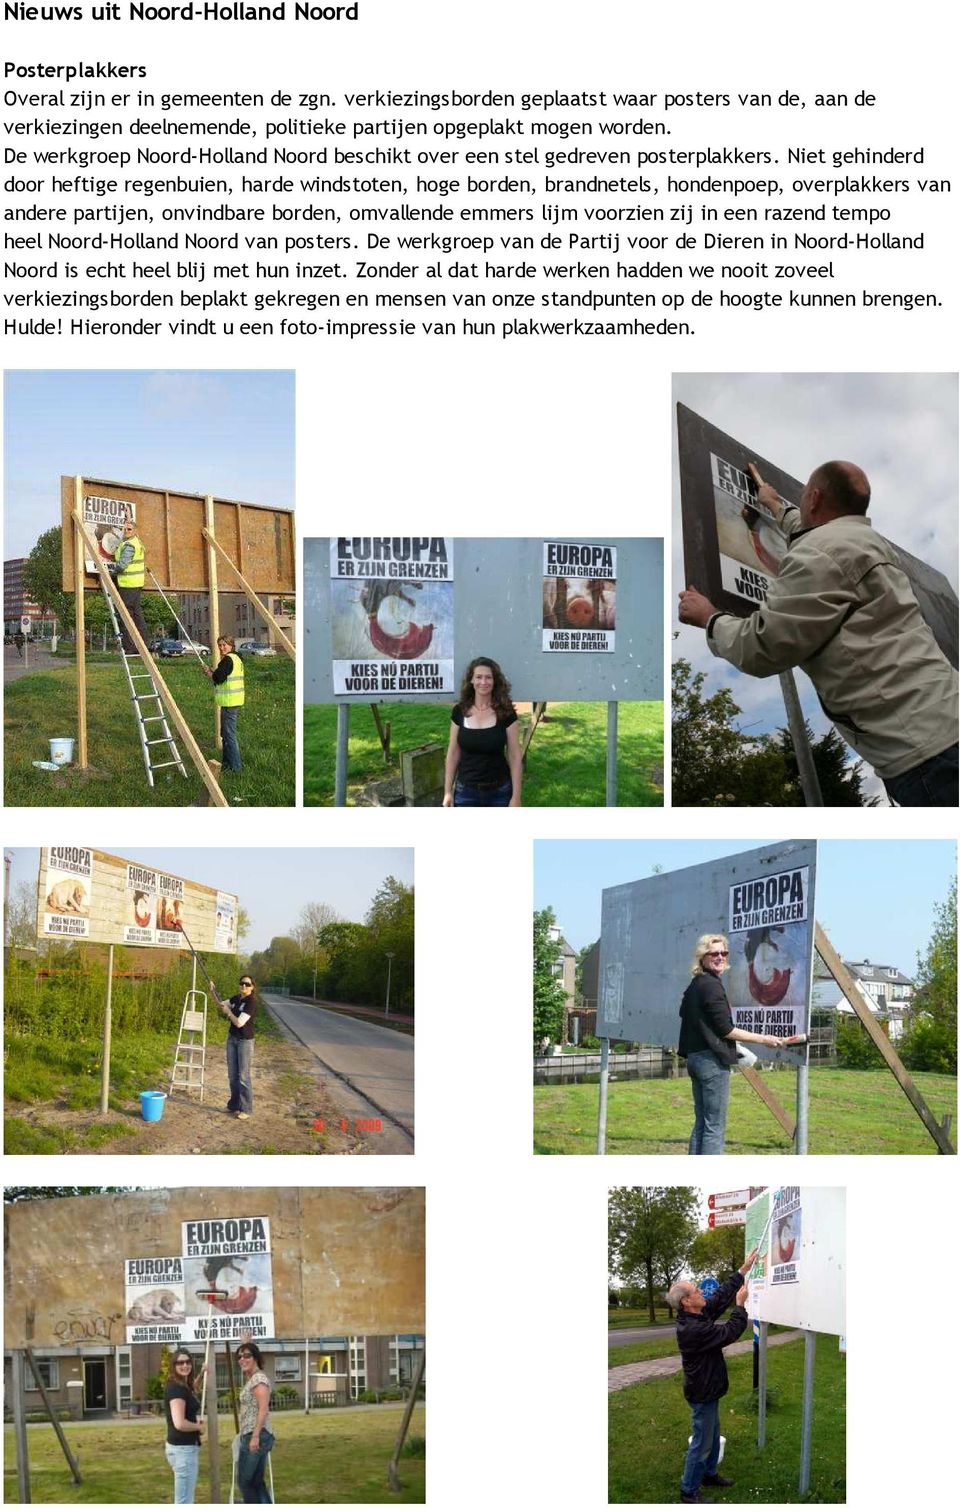 De werkgroep Noord-Holland Noord beschikt over een stel gedreven posterplakkers.